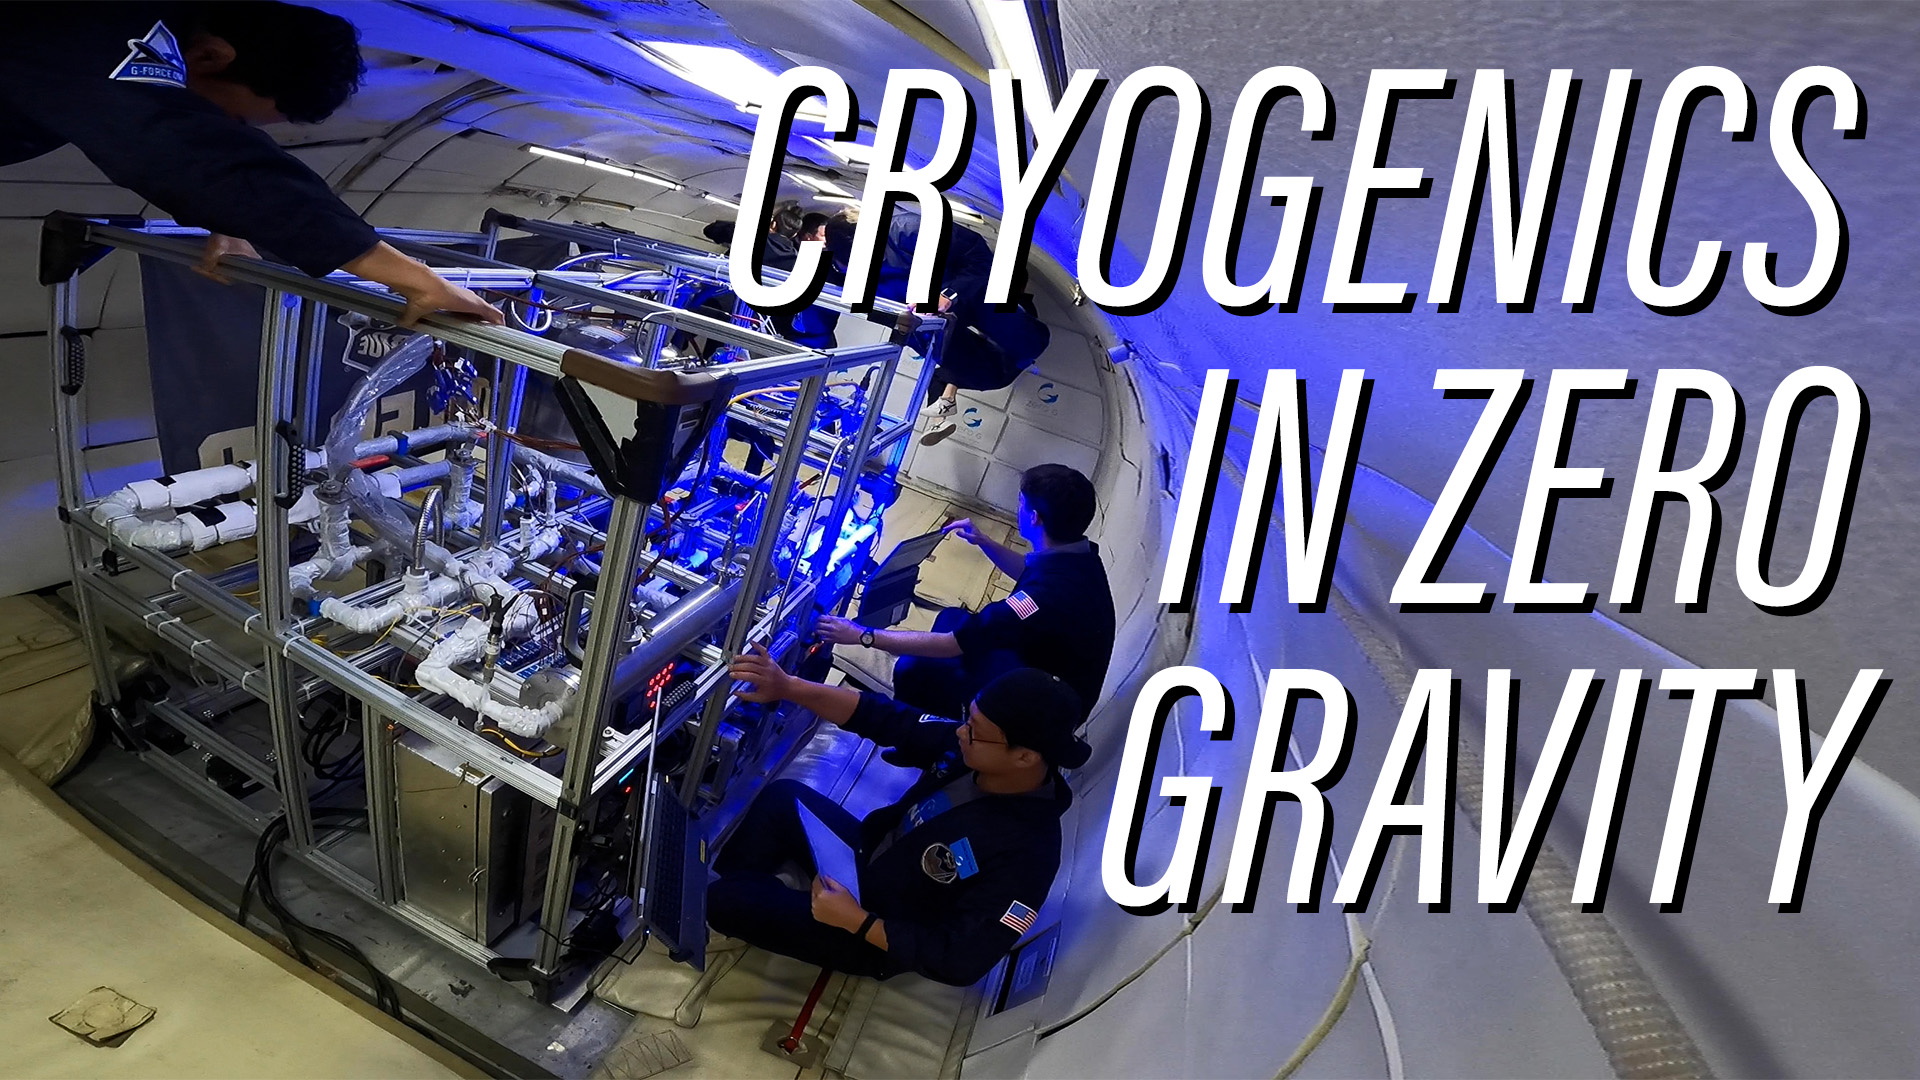 Cryogenics in zero gravity